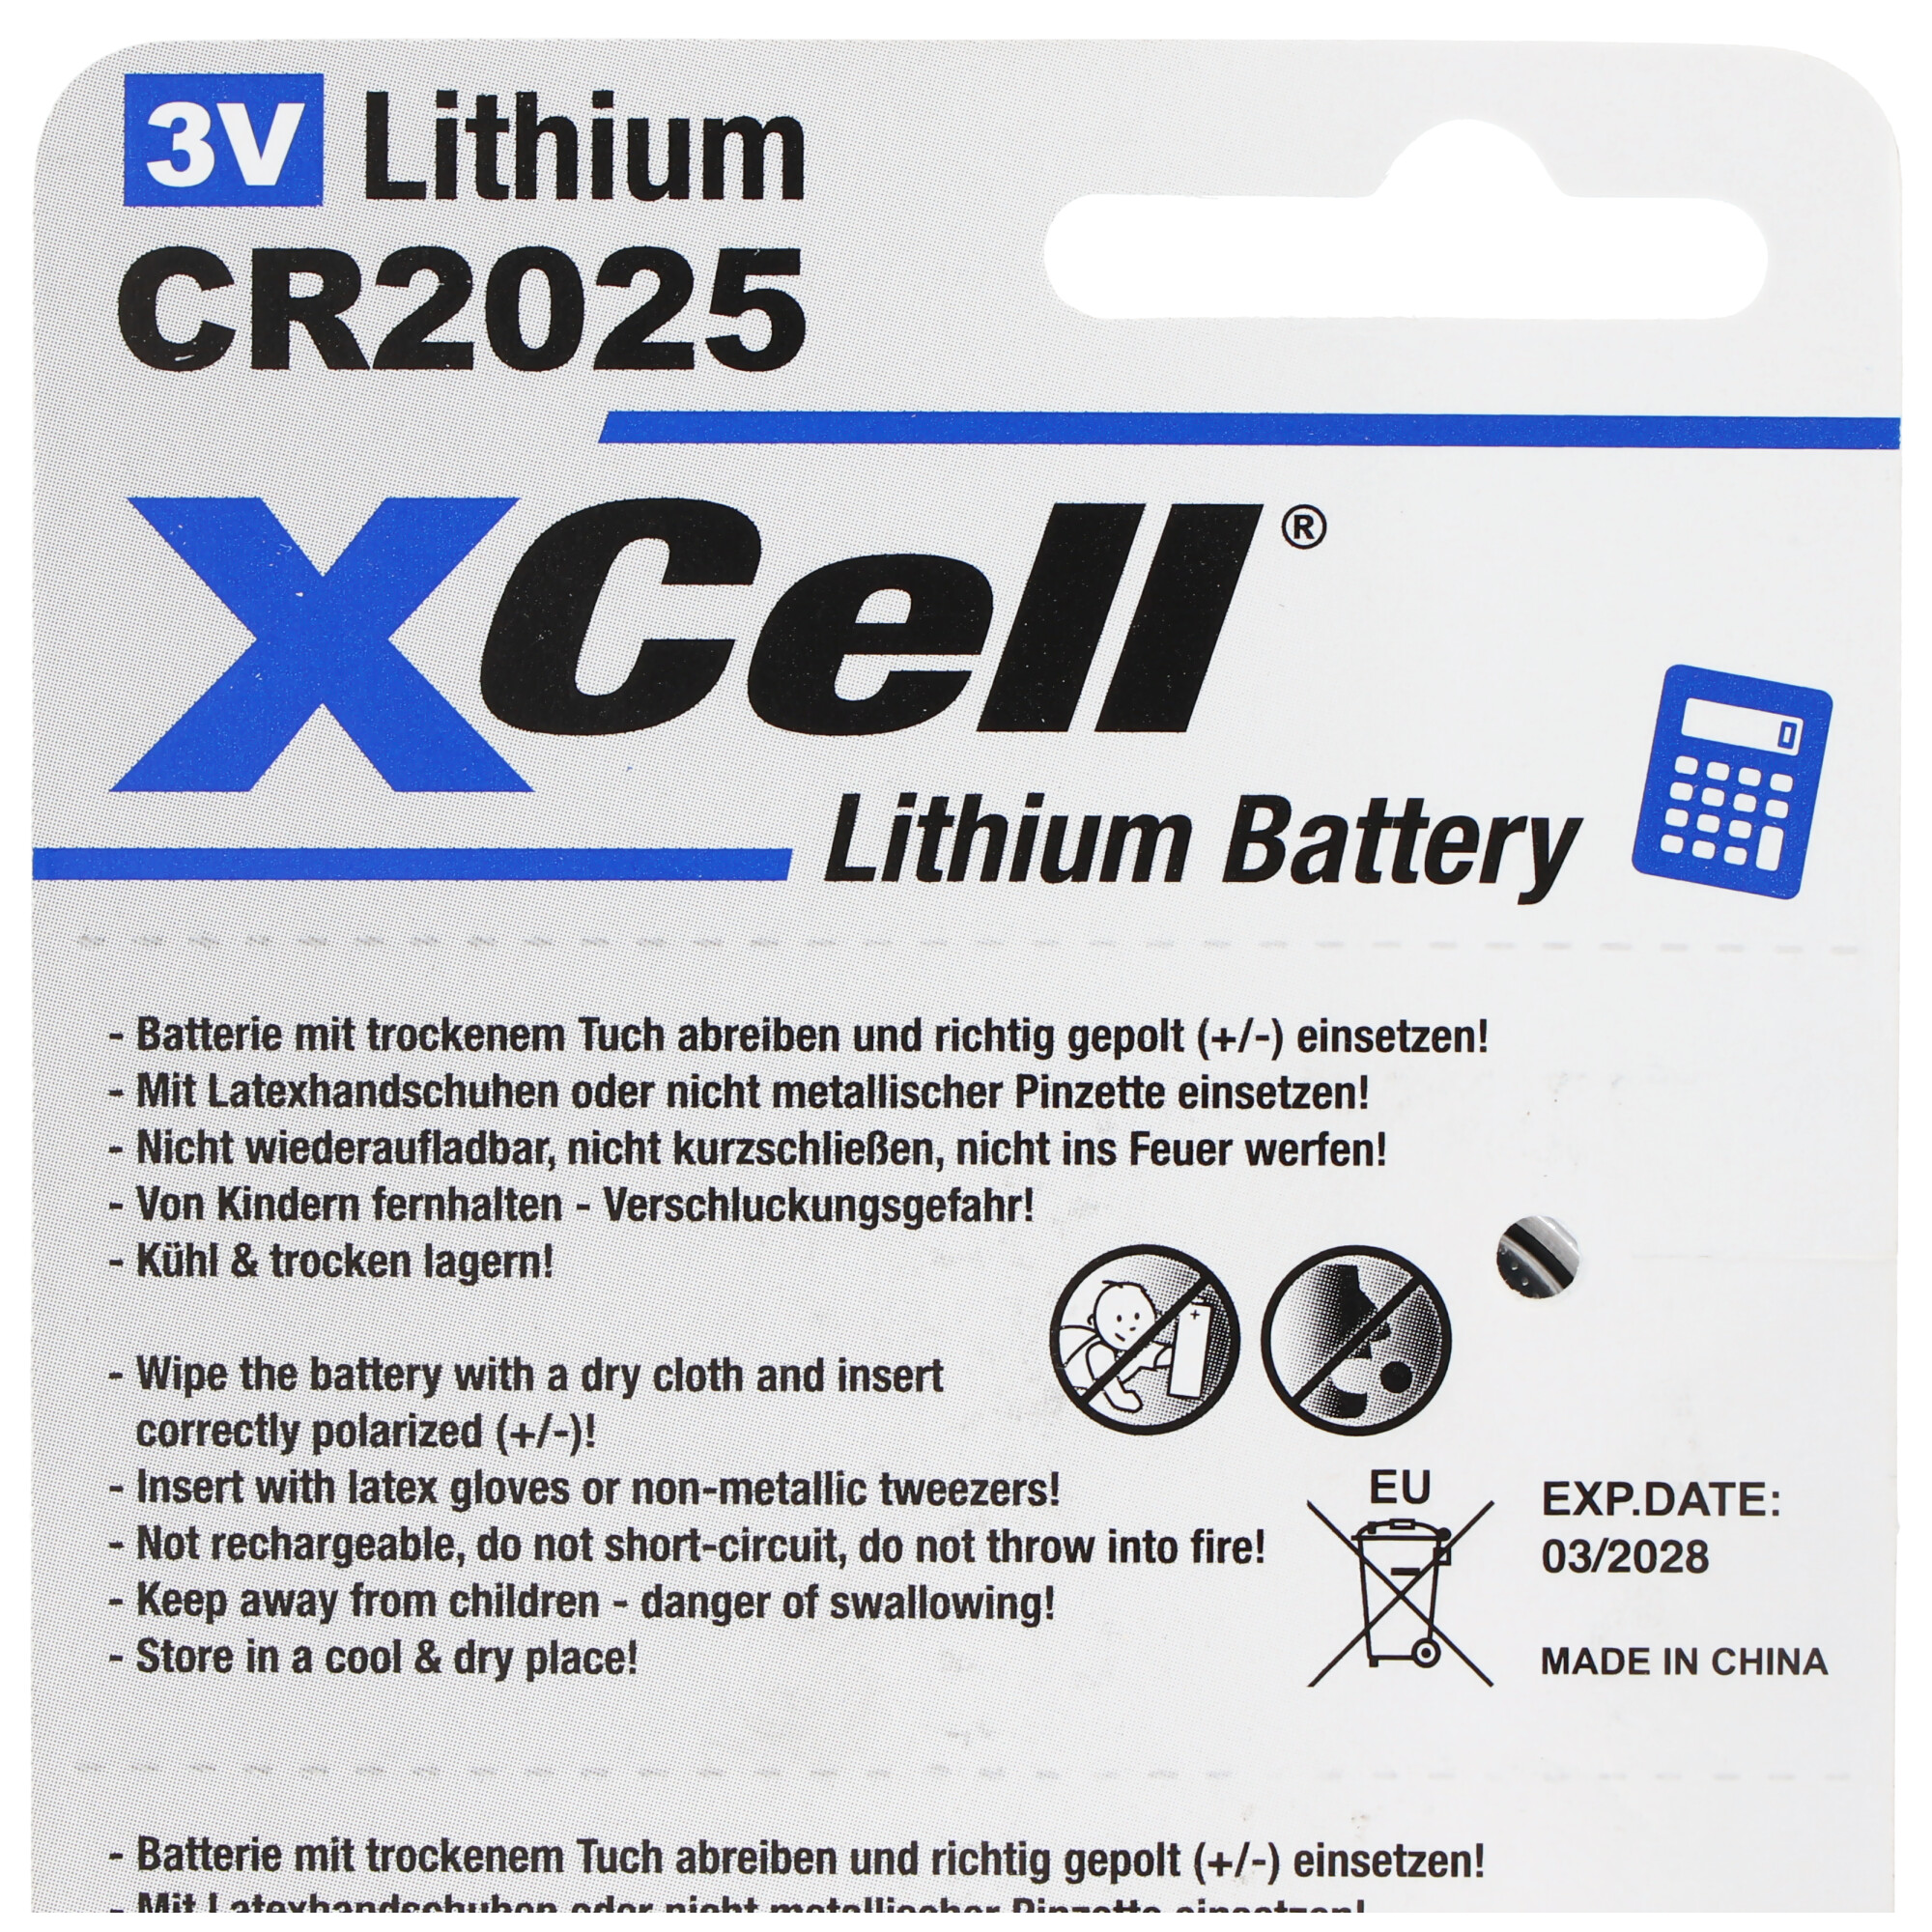 5er-Sparset CR2025 Lithium Batterie 3V, CR2025 Batterien im praktischen 5er Set